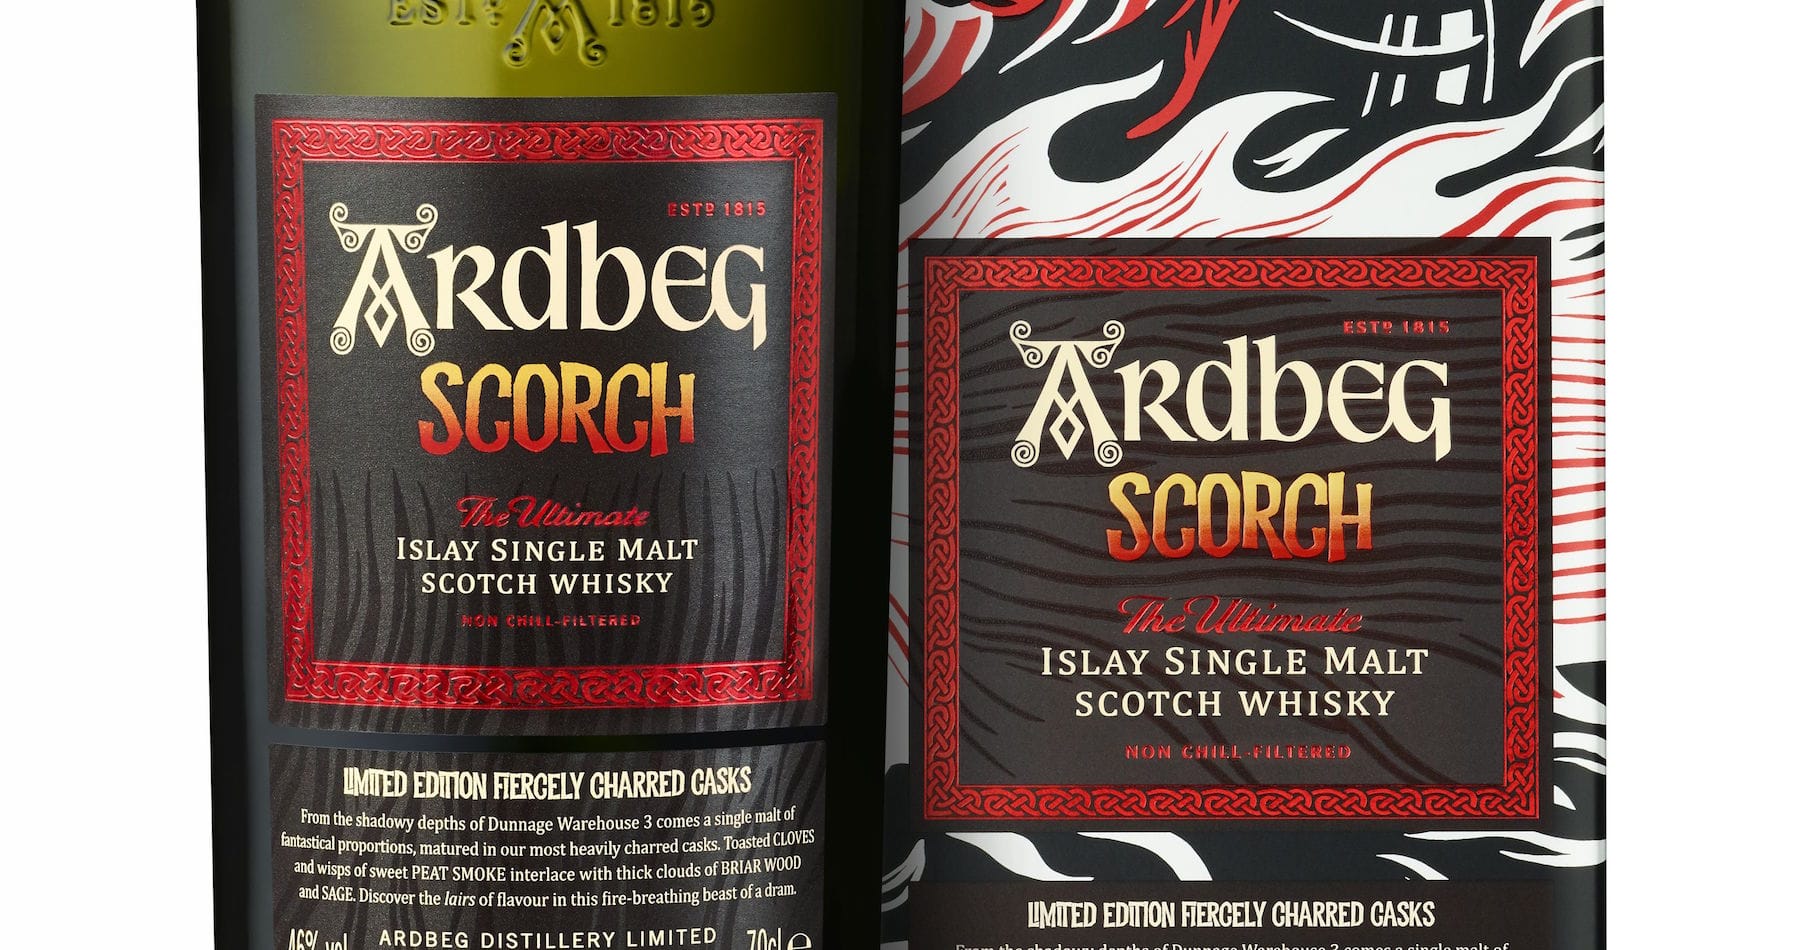 Ardbeg Release New Whisky Scorch For Ardbeg Day 2021